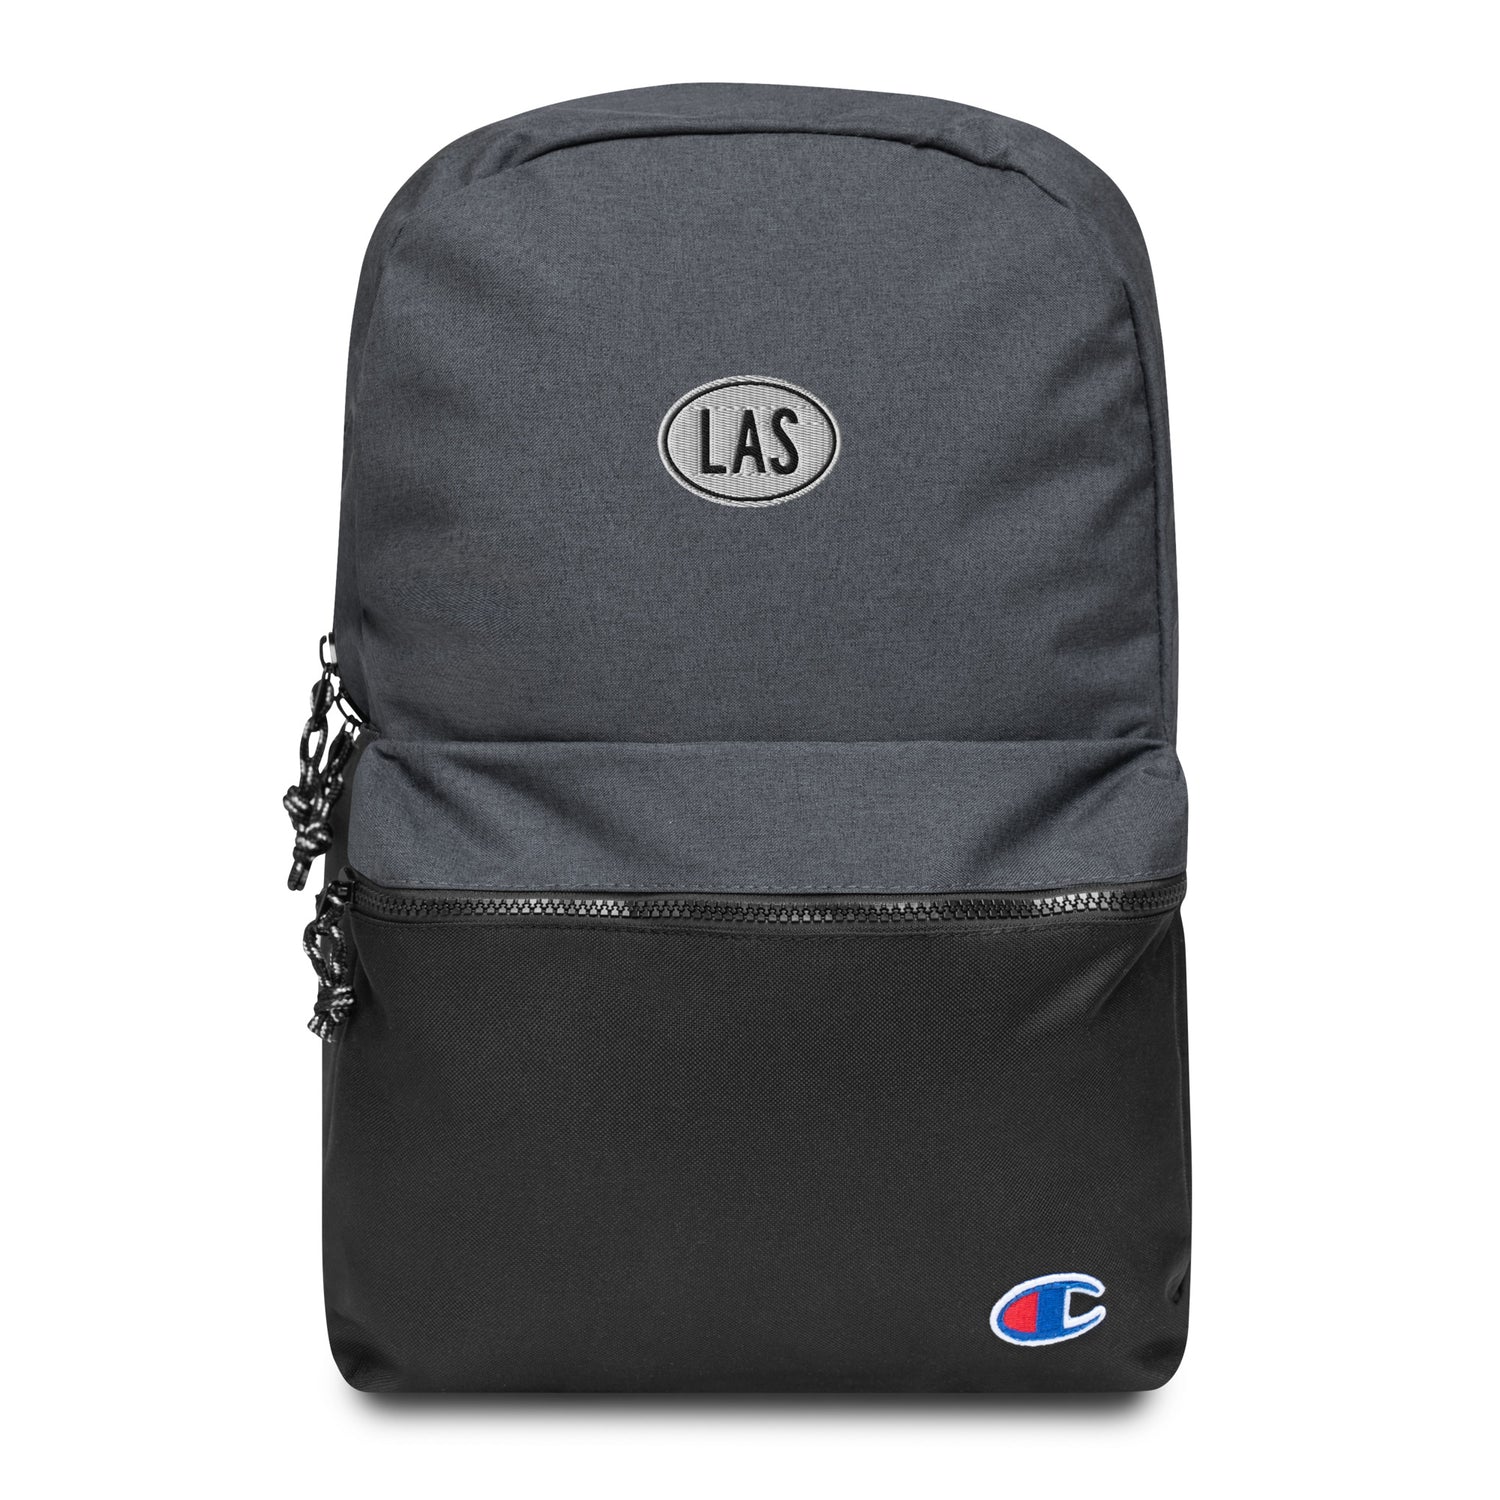 Las Vegas Nevada Backpacks, Fanny Packs and Tote Bags • LAS Airport Code